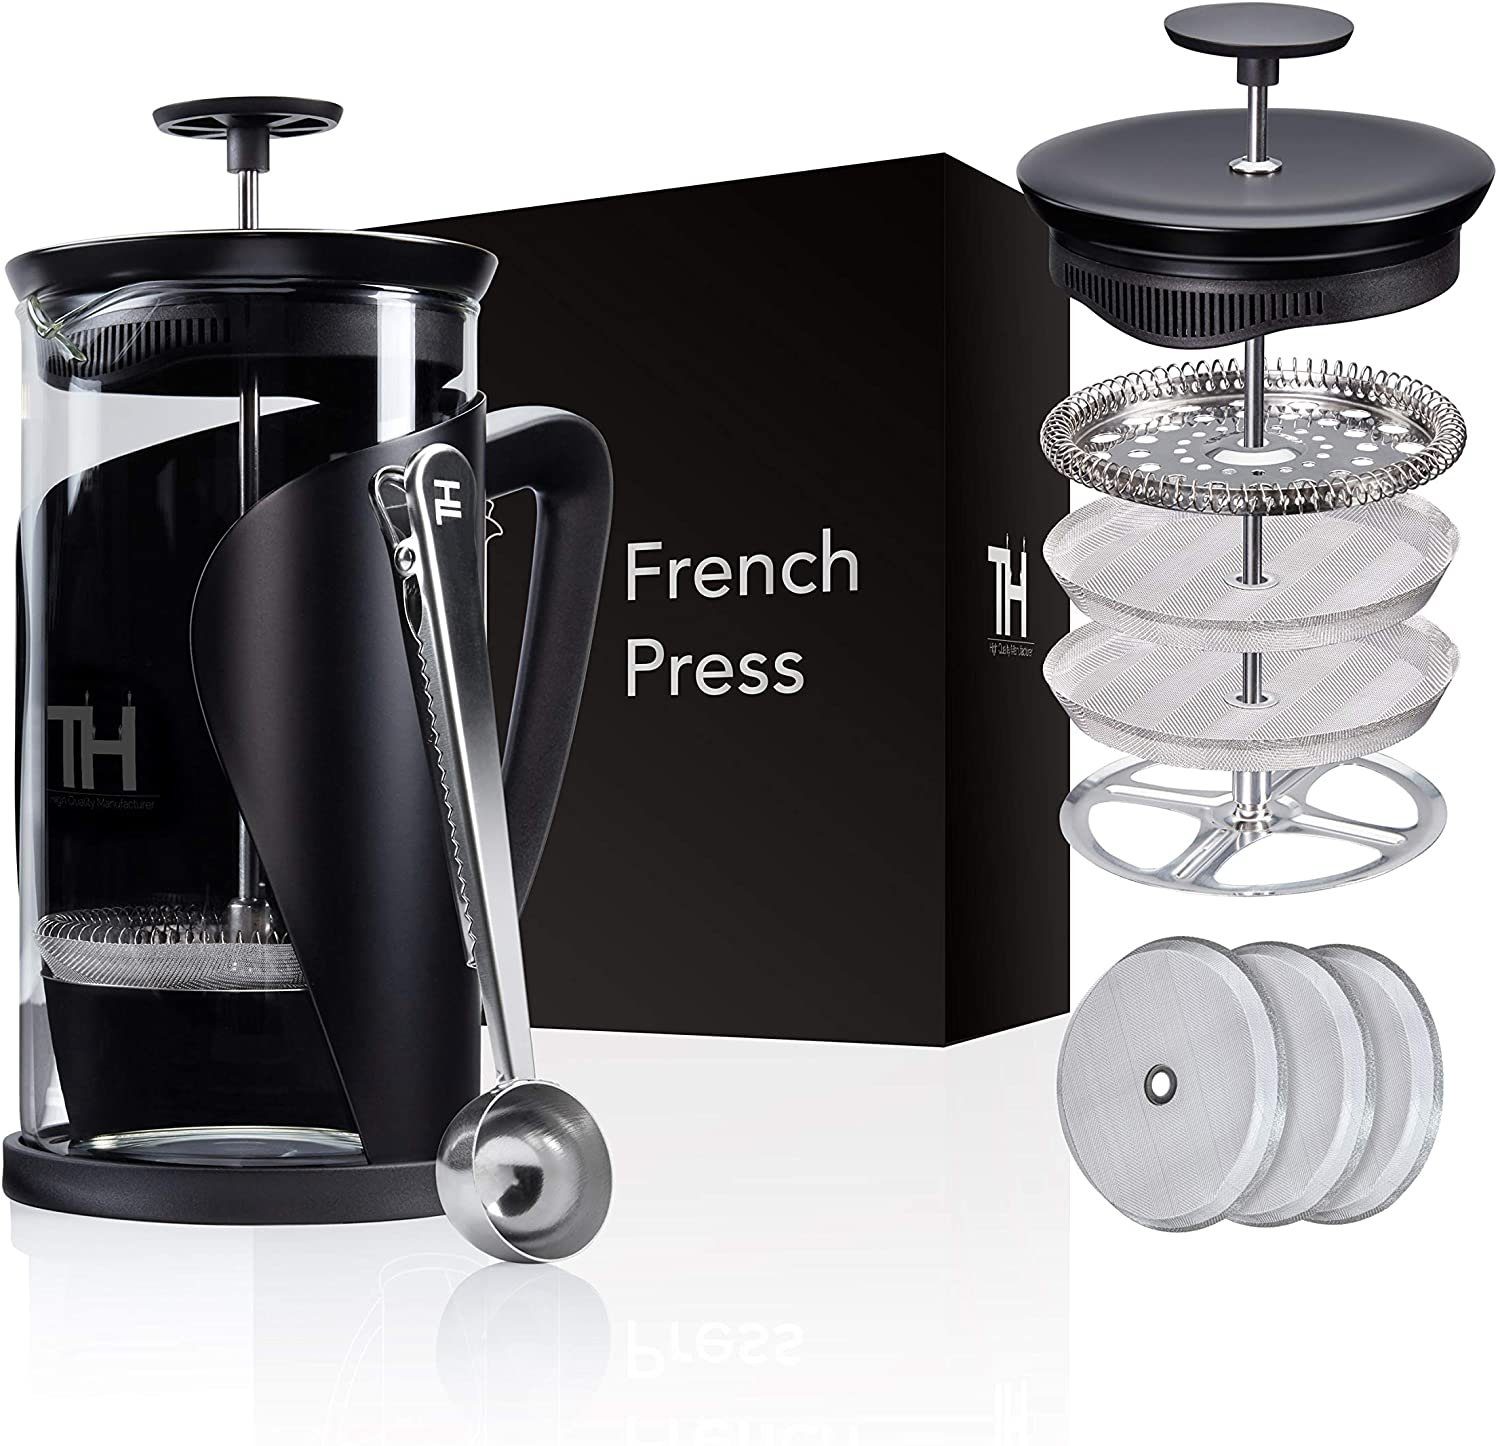 Glas mit & Kanne Press French Filtersystem, Kaffeebereiter Edelstahl Thiru 4D